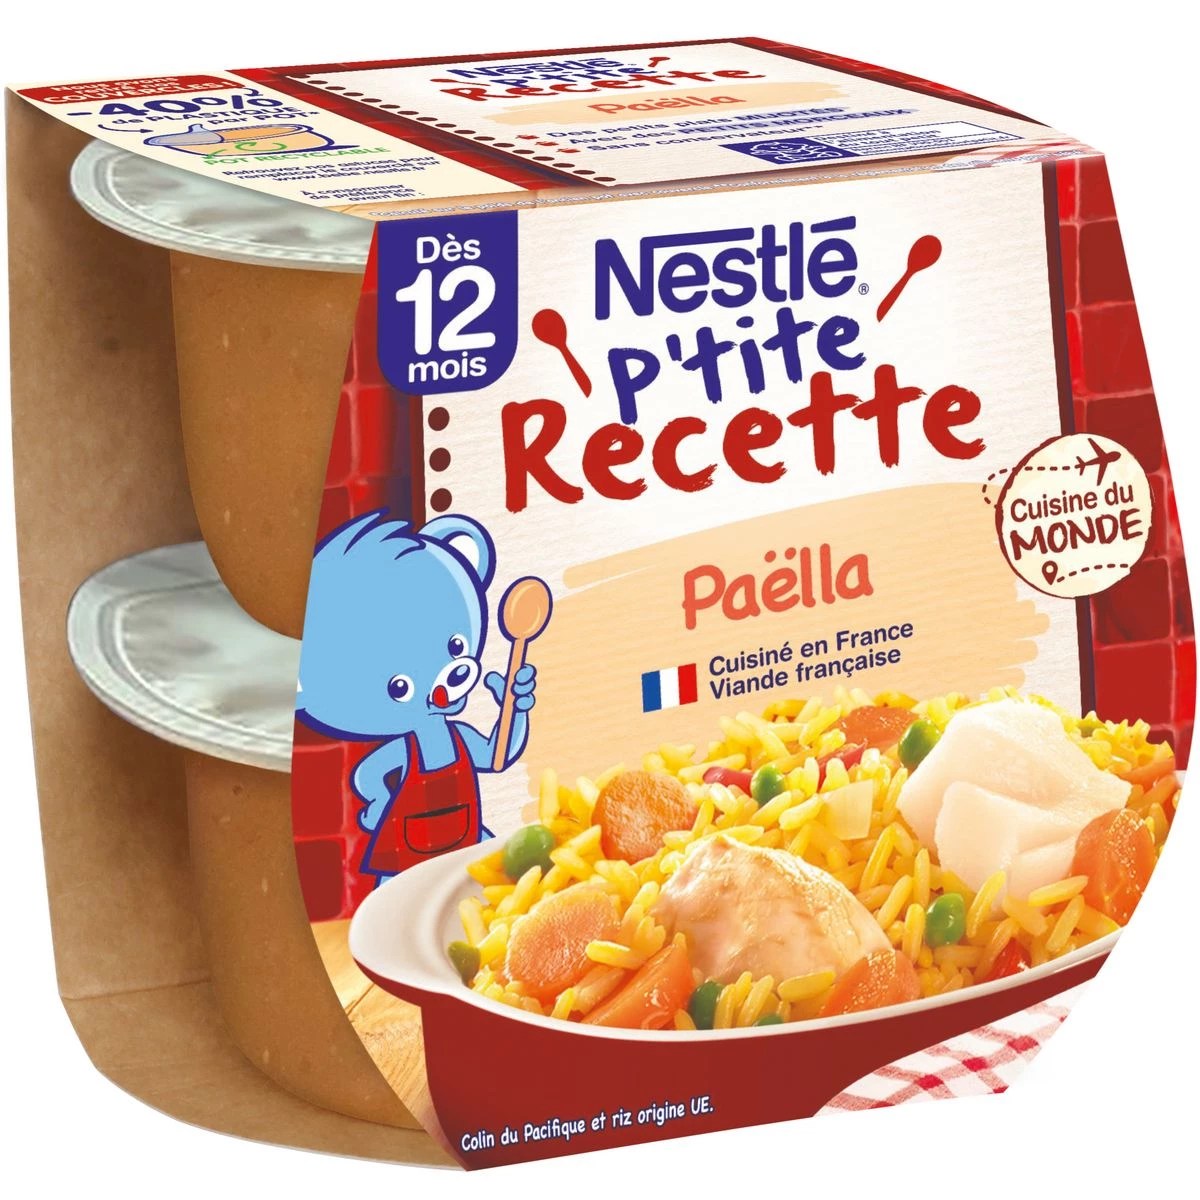 Ptite Recipe 婴儿菜 12 个月以上海鲜饭 2x200g - NESTLE